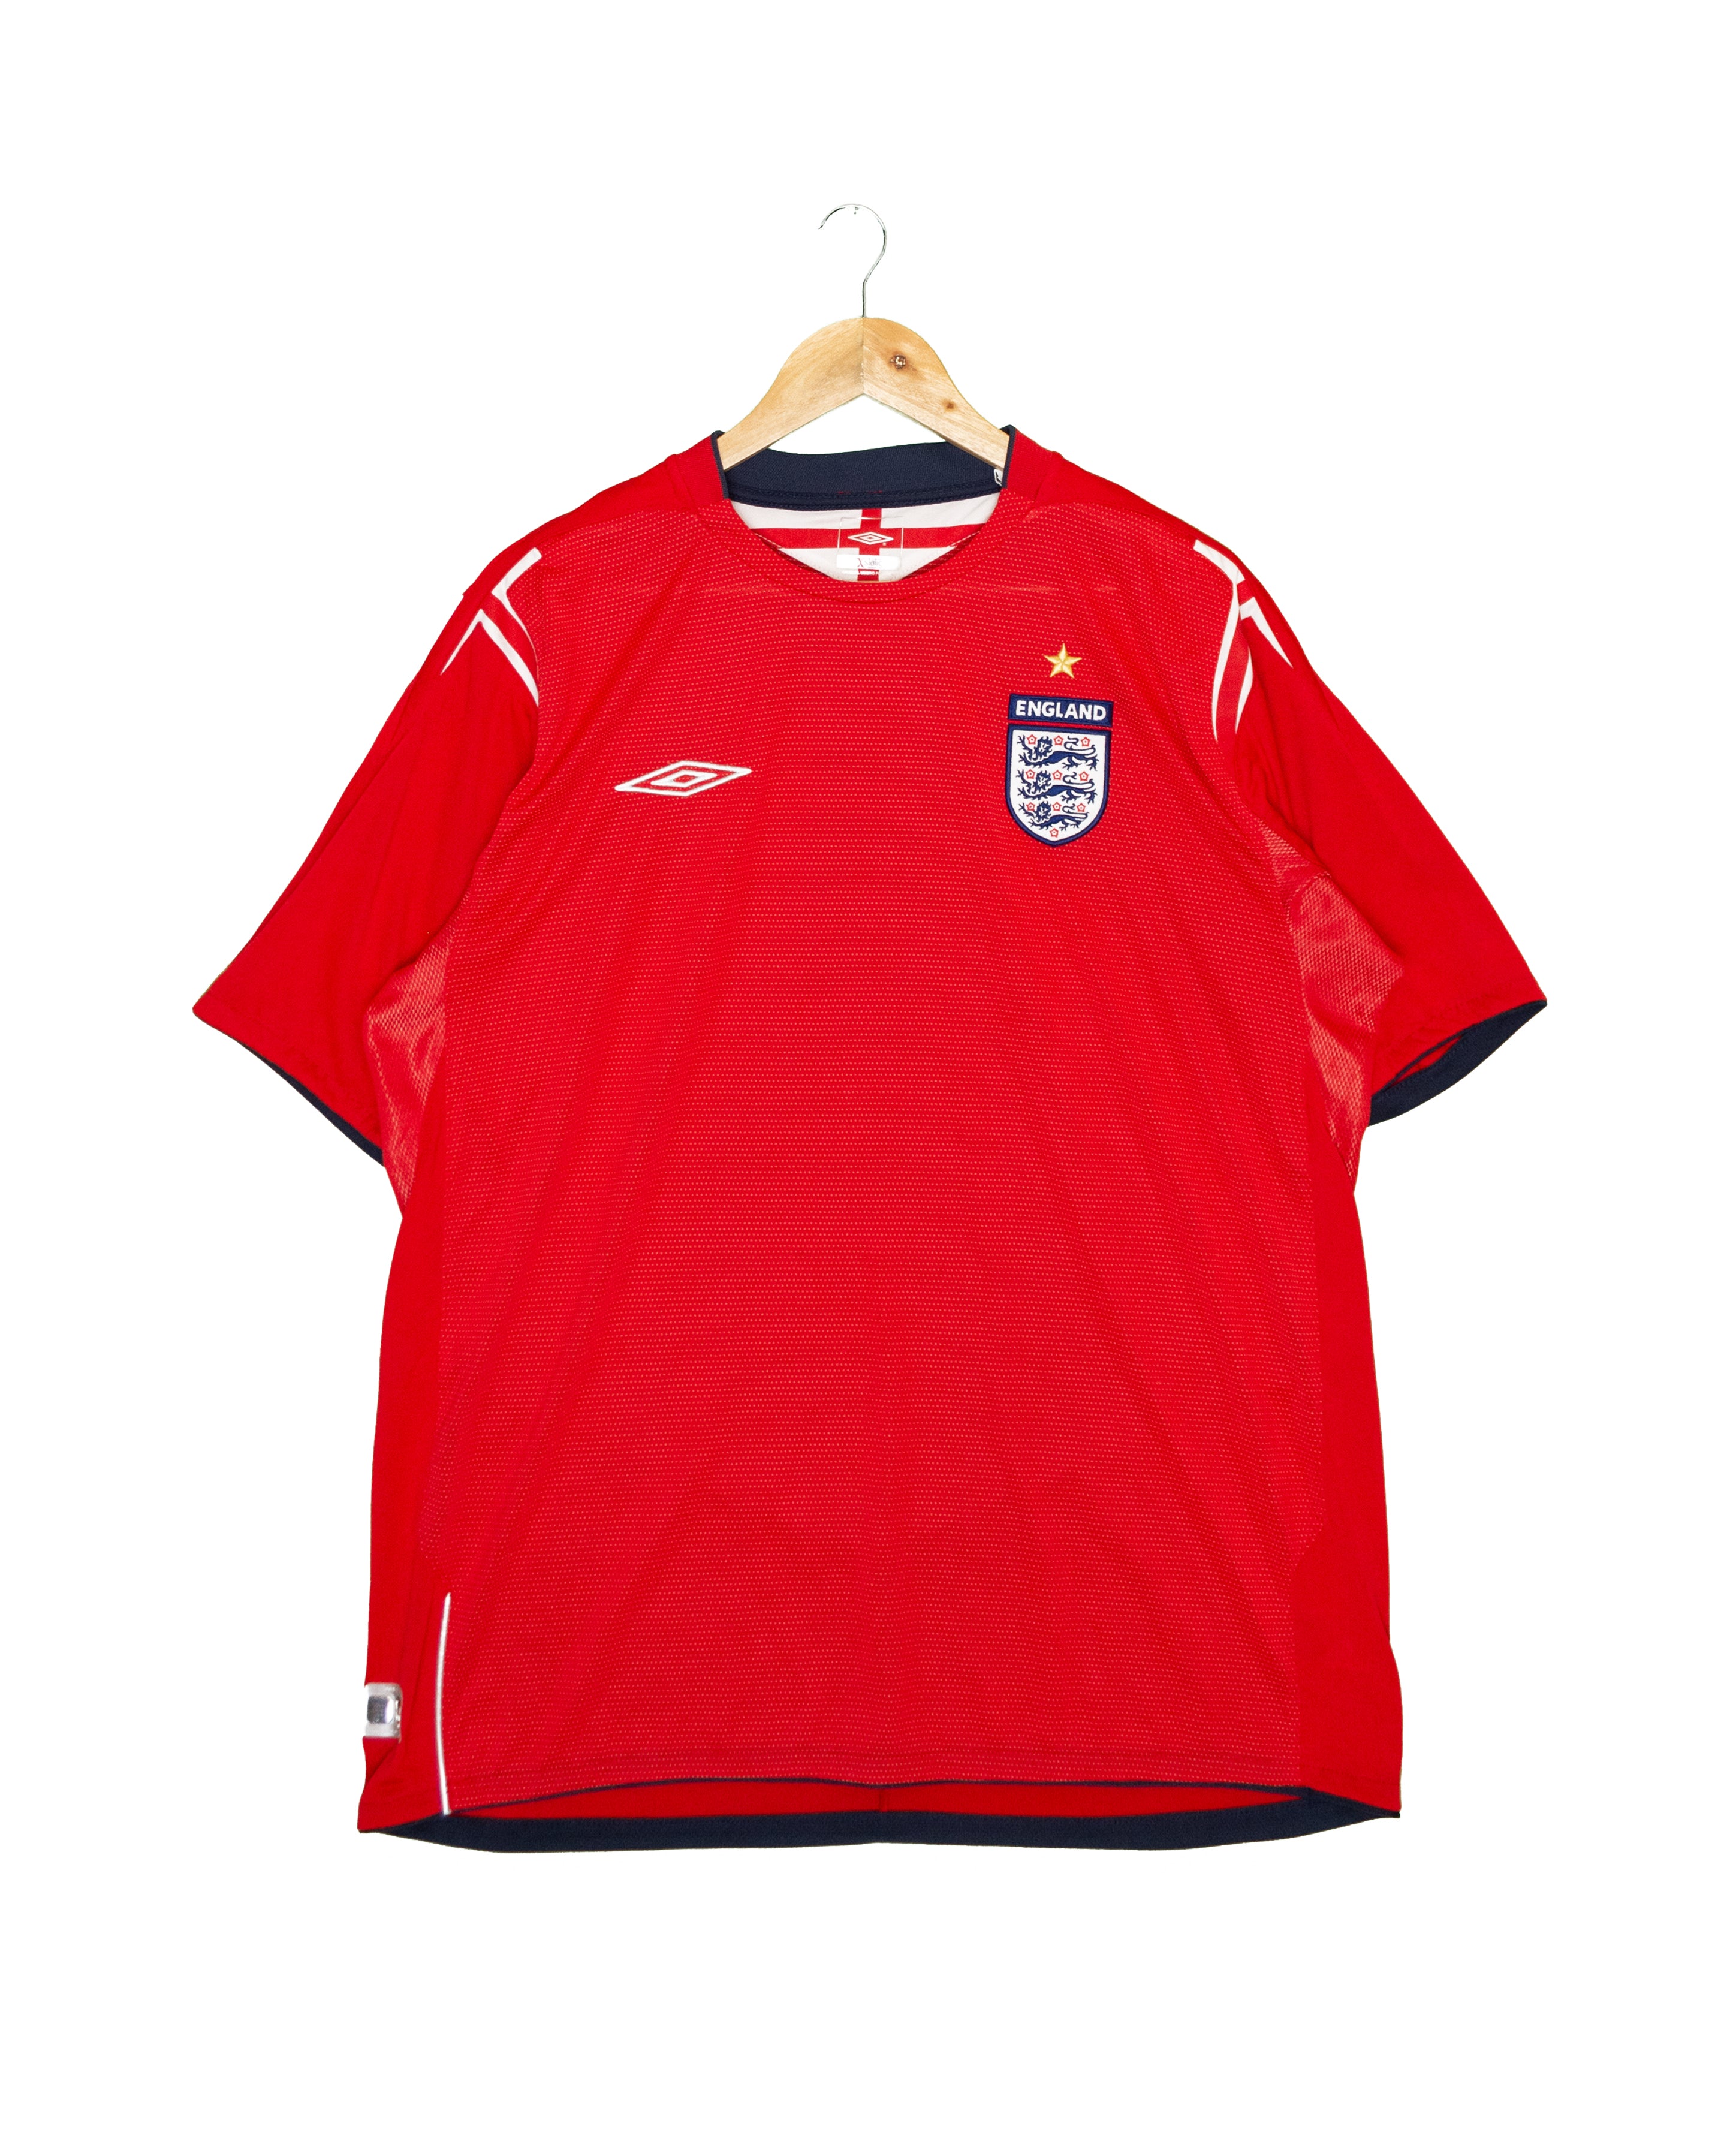 England 2004 Away Shirt - XL - #1901